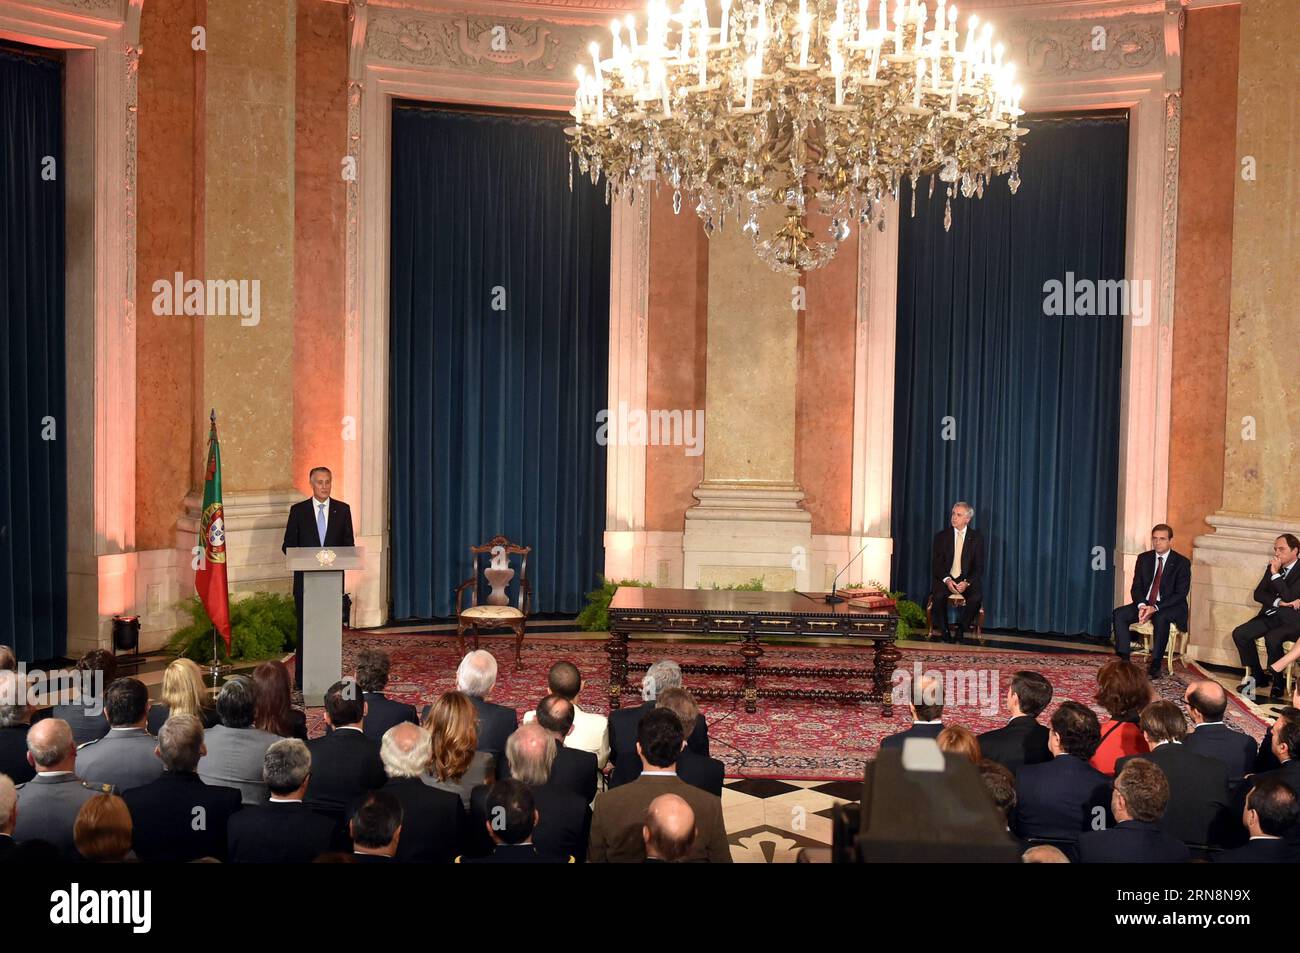 (151031) -- LISSABON, 30. Oktober 2015 -- der portugiesische Präsident Anibal Cavaco Silva spricht während einer Vereidigung im Ajuda-Palast in Lissabon am 30. Oktober 2015. Pedro Passos Coelho wurde am Freitag von Präsident Anibal Cavaco Silva in einer Zeremonie im Ajuda-Palast in Lissabon als Portugals Premierminister der Mitte-Rechts-Koalitionsregierung vereidigt. PORTUGAL-LISSABON-NEW GORVENMENT-FLUCH IN ZhangxLiyun PUBLICATIONxNOTxINxCHN Lissabon OCT 30 2015 der PORTUGIESISCHE Präsident Anibal Cavaco Silva spricht während einer Zeremonie in Schweden IM Ajuda-Palast in Lissabon AM OCT 30 2015 Pedro Passos Coelho WHA Stockfoto